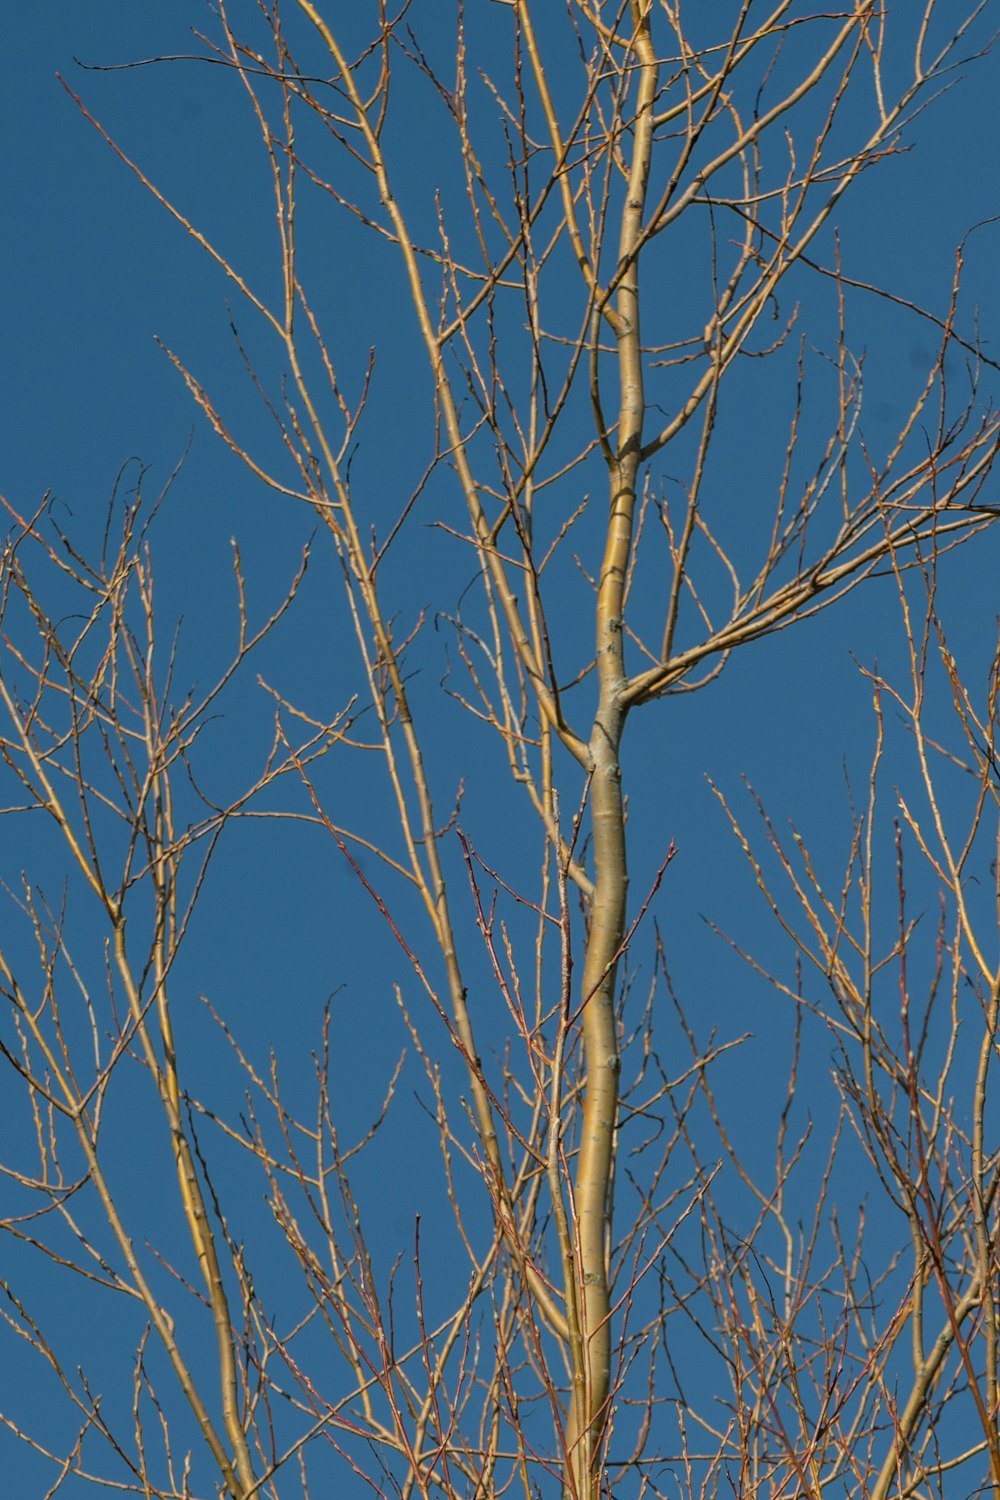 Árbol desnudo marrón bajo el cielo azul durante el día